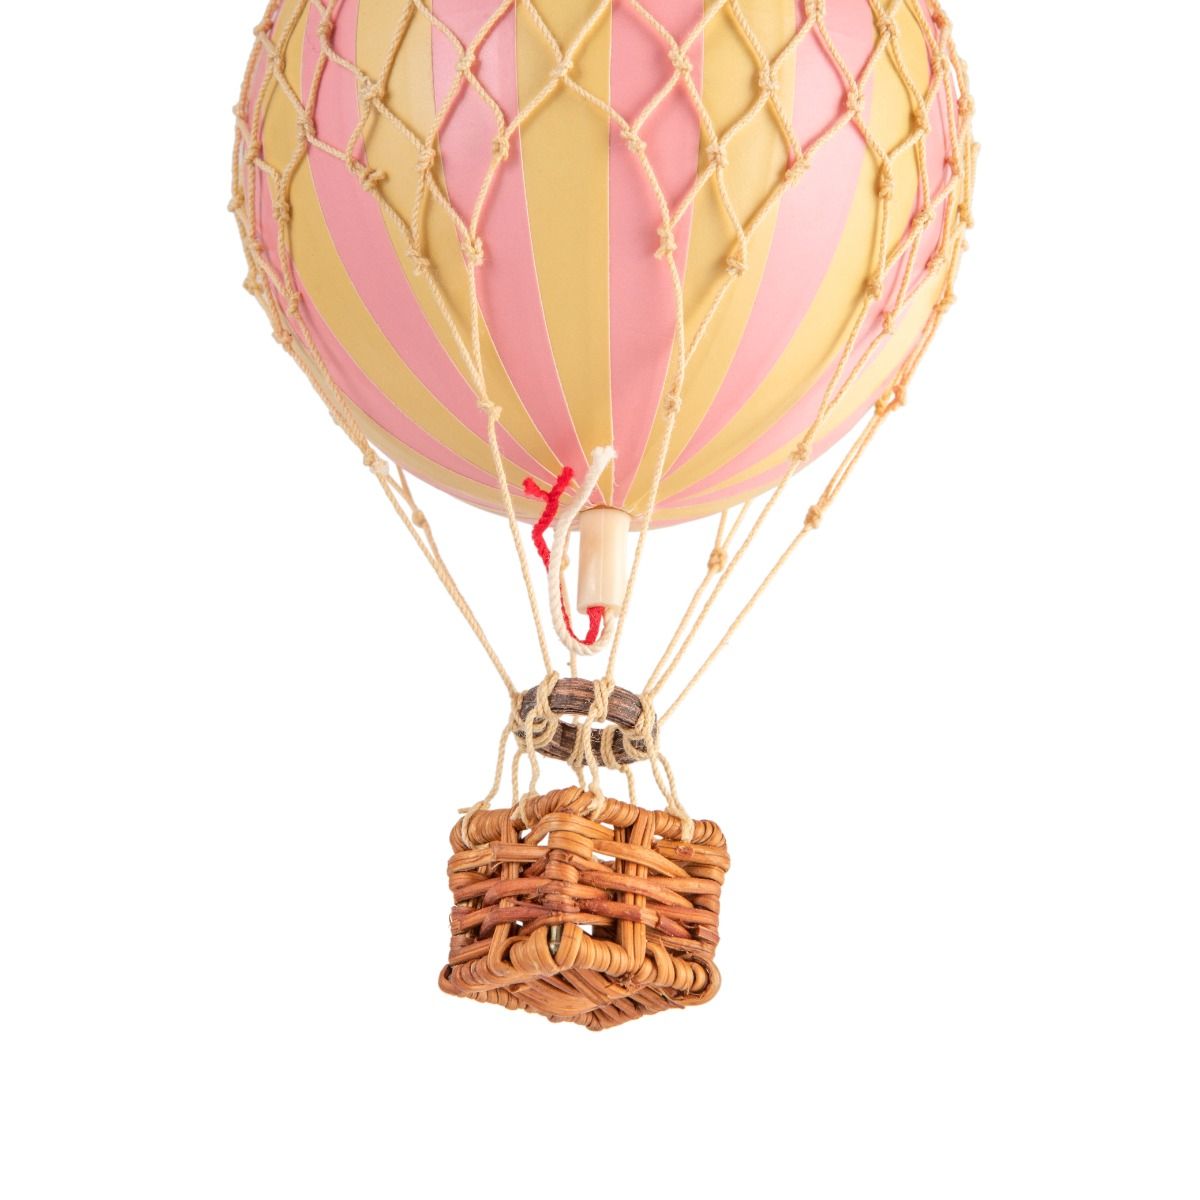 Dekoracja sufitowa / Balon dekoracyjny Pink by AUTHENTIC MODELS